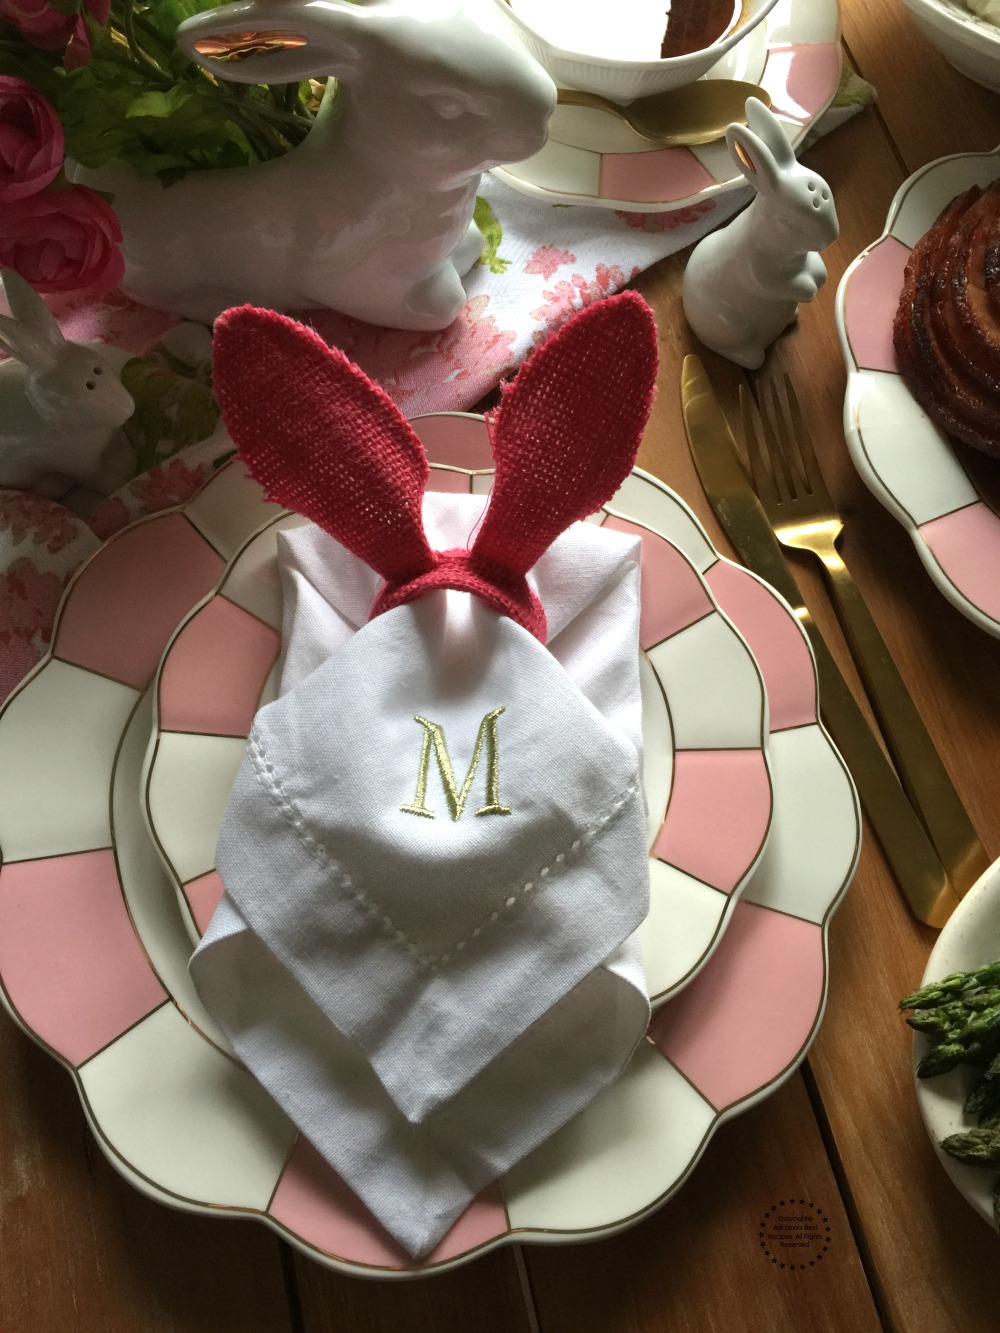 La comida de Pascua incluye orejas de conejo y vajilla rosada